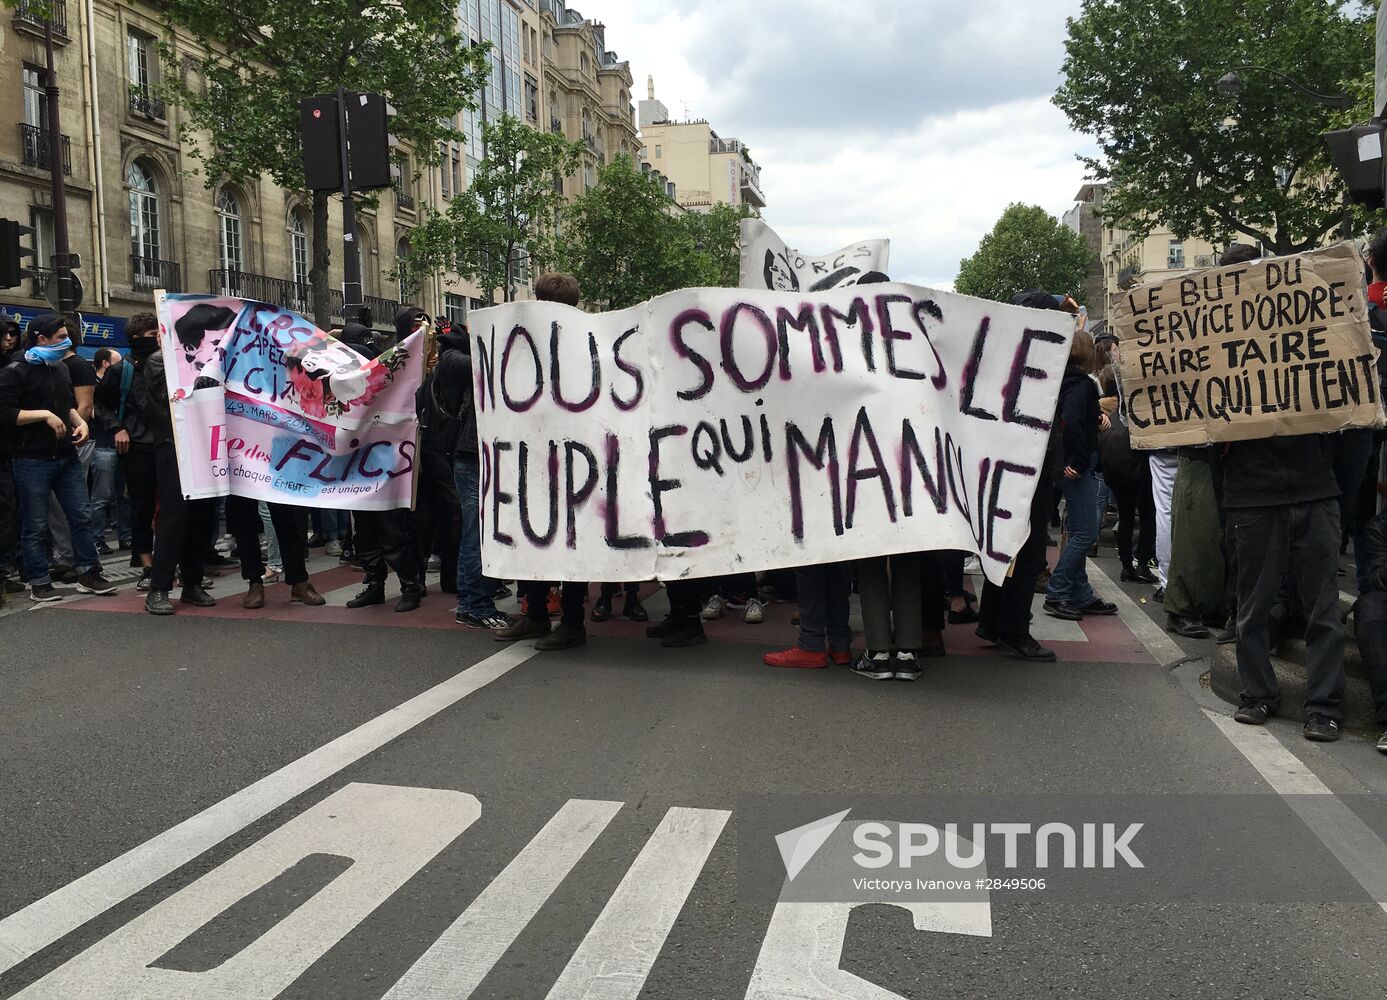 Protests against labor reform in Paris